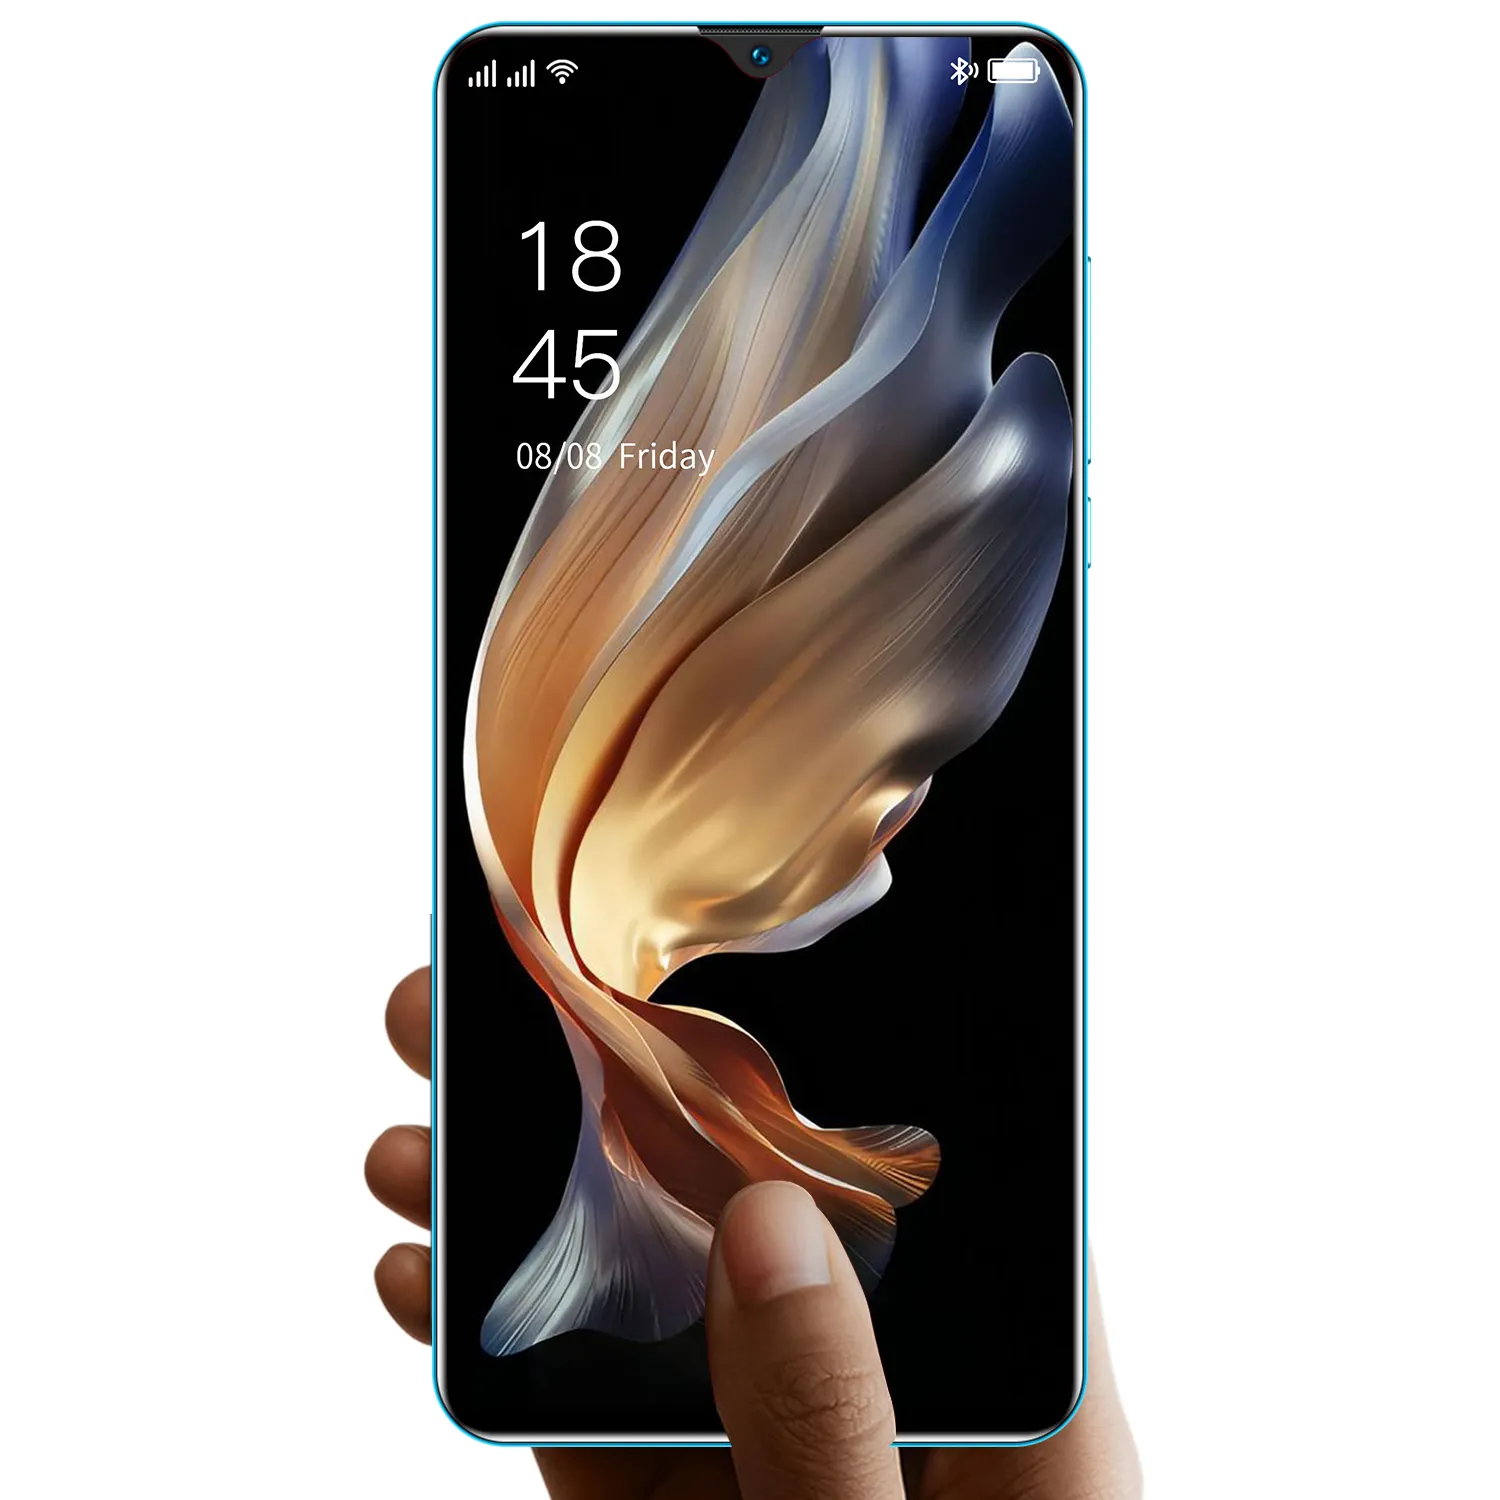 2022 nuevos teléfonos móviles xiomi Note11 Pro, venta al por mayor, precio de fábrica, teléfono inteligente de marca Original, caja sellada, teléfonos inteligentes desbloqueados